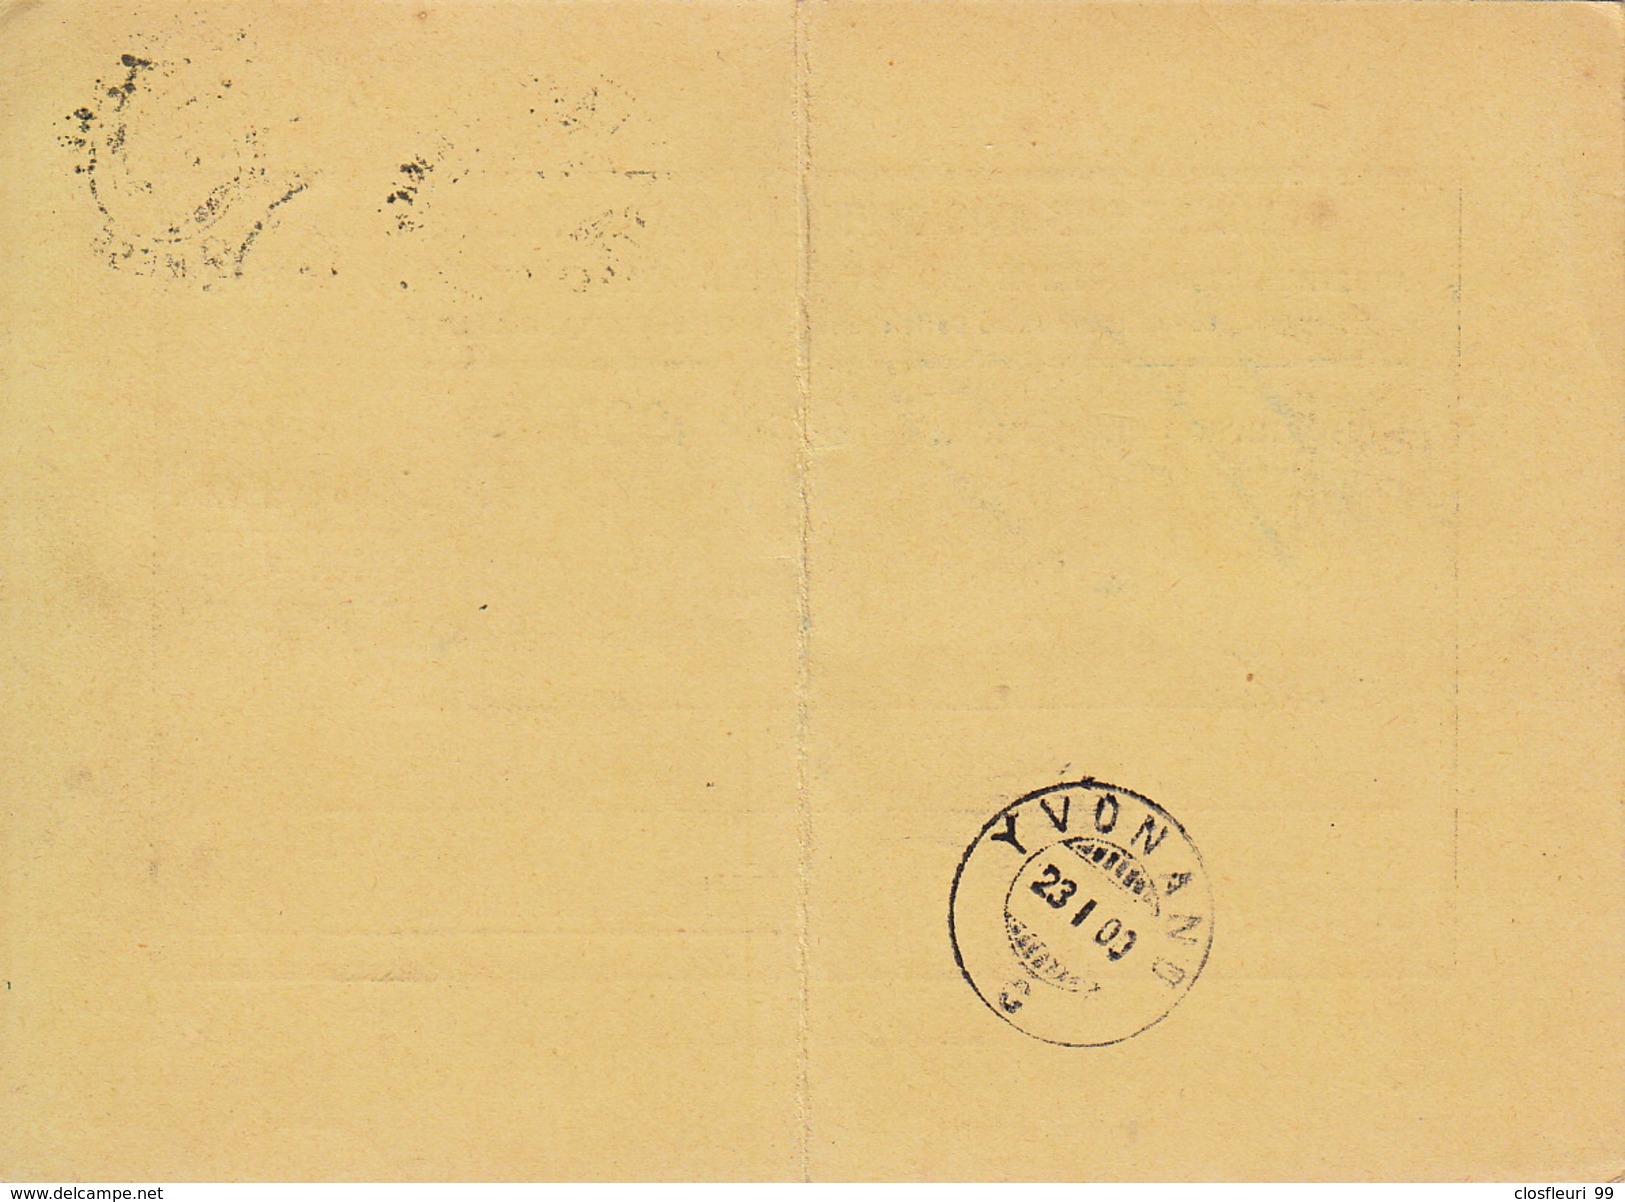 Remboursement  Pour 1900: Feuille Avis Officiels Du Canton De VD / 23.1.1900. Cachet Arrivée Yvonand - Storia Postale